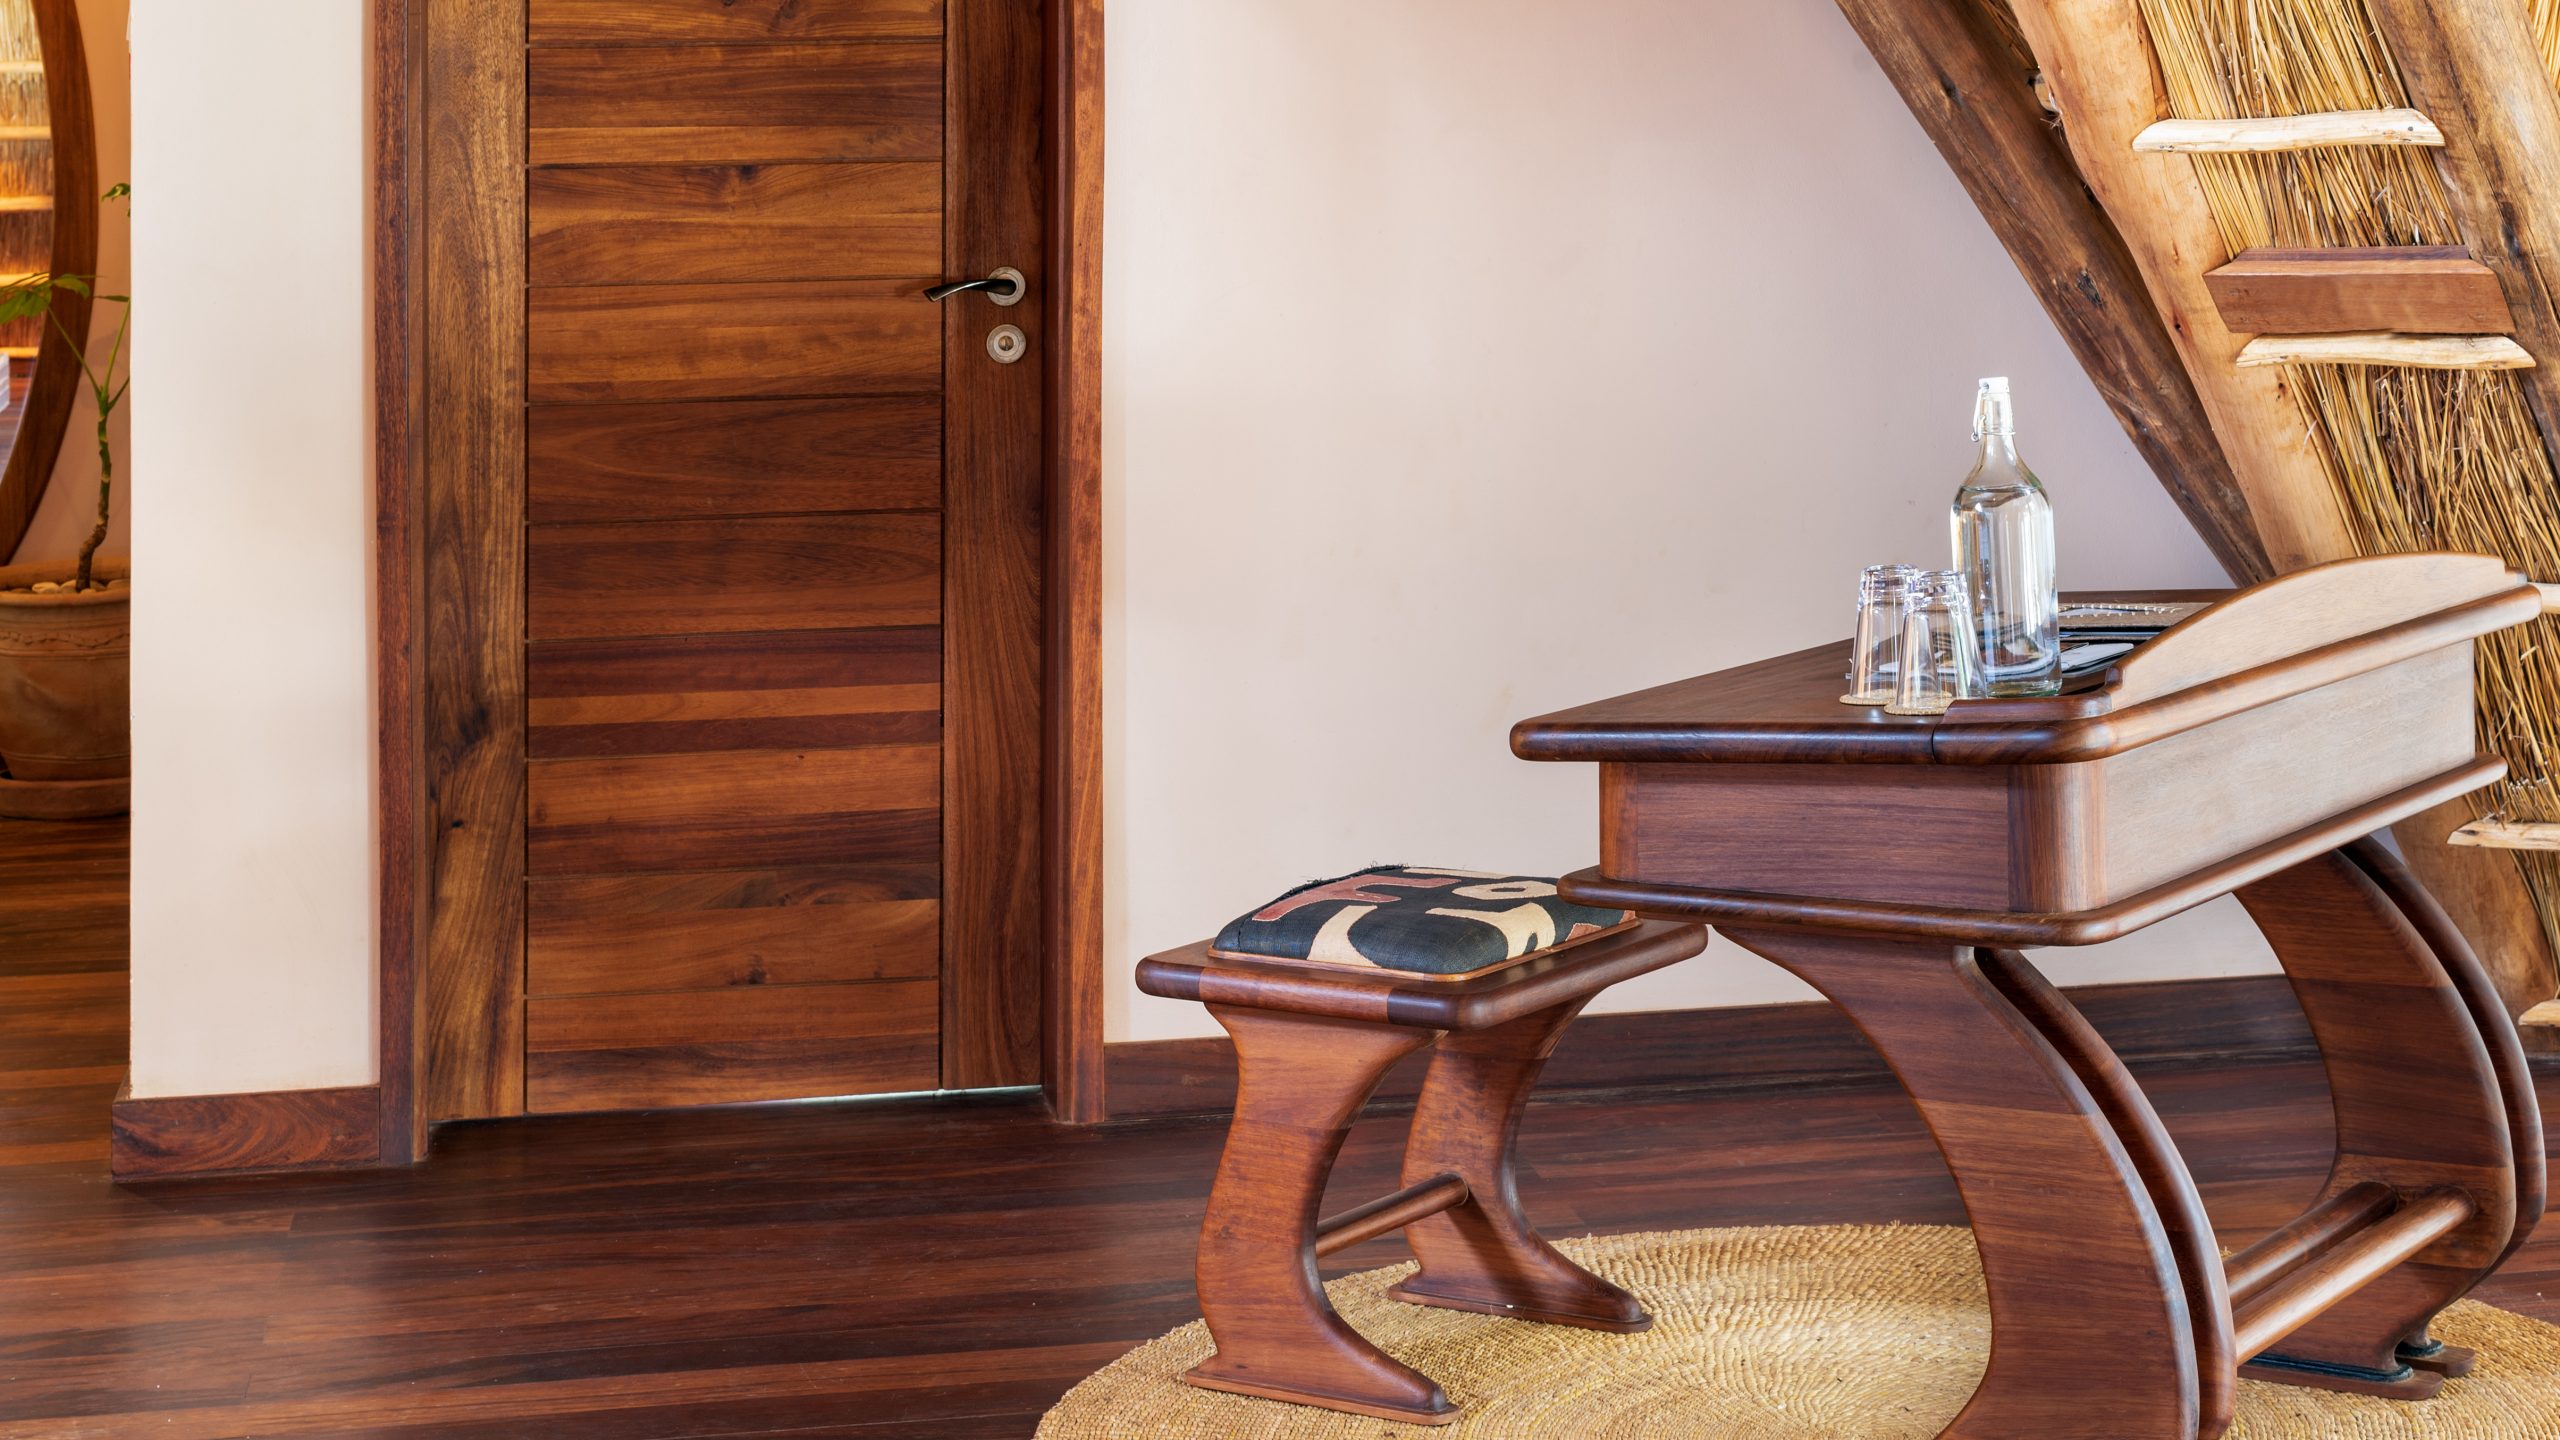 Nile Safari Lodge guest room desk & stool